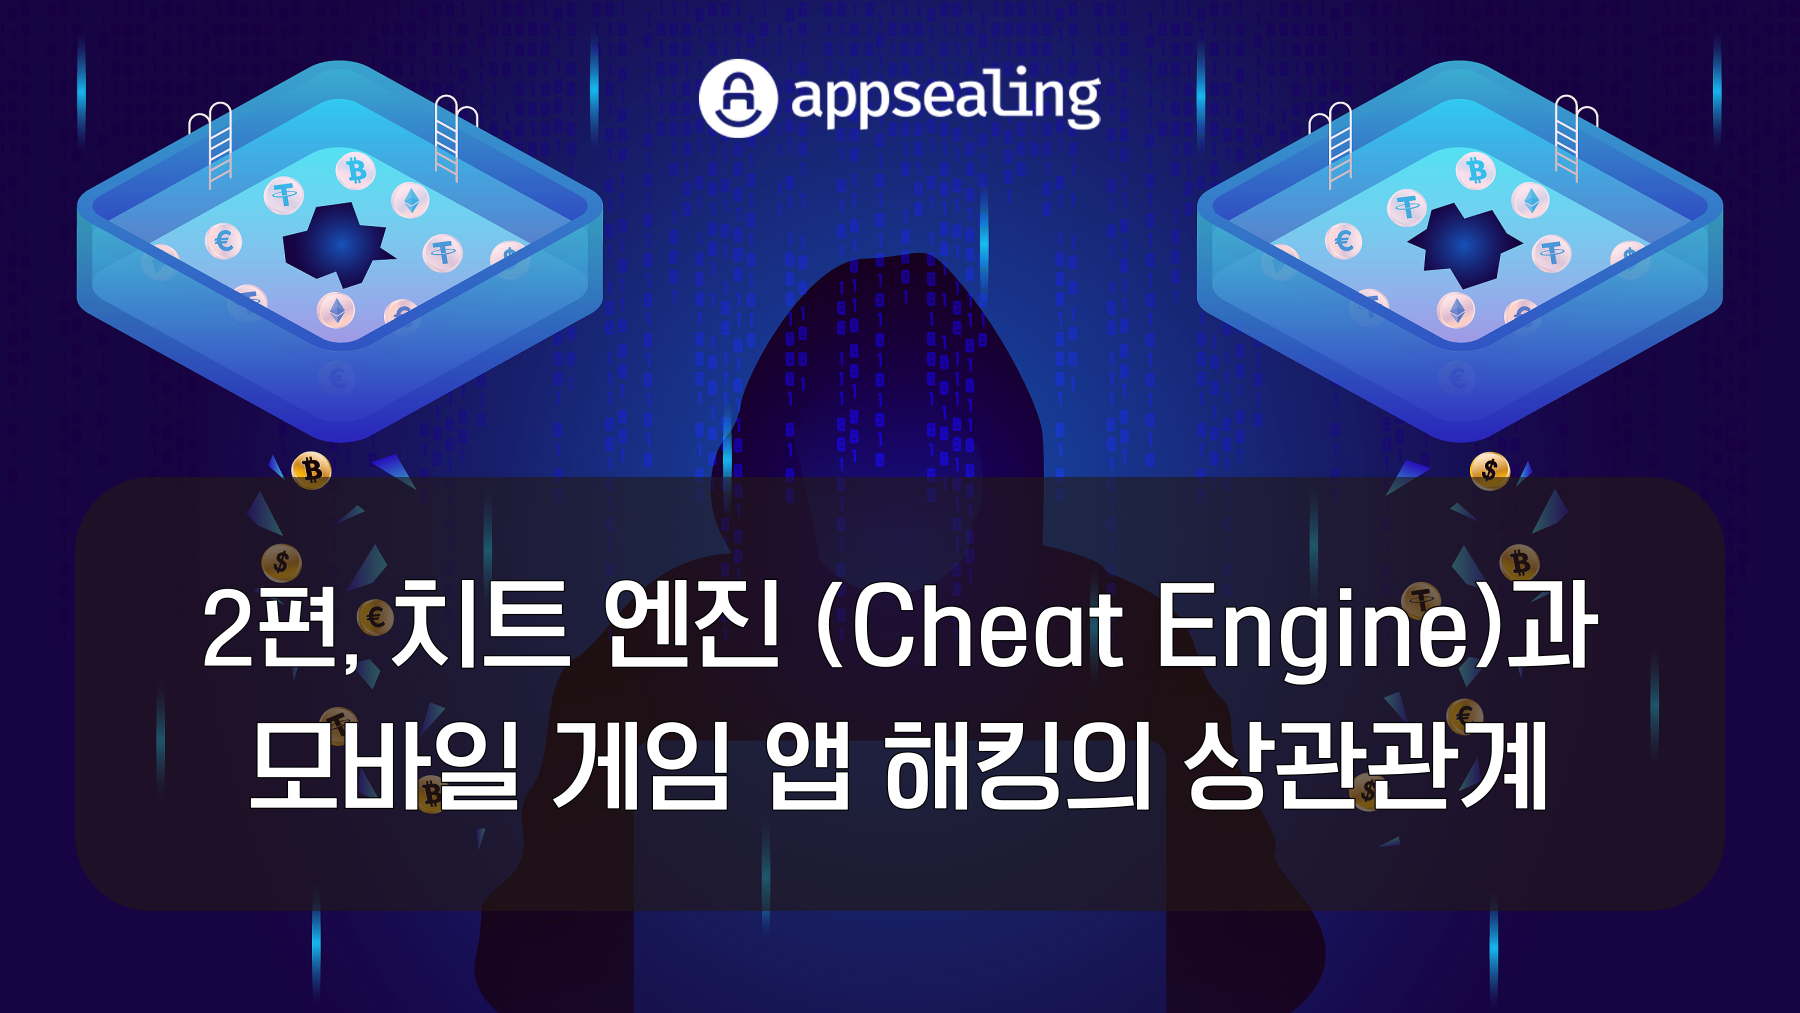 치트 엔진(Cheat Engine)과 모바일 게임 앱 해킹의 상관관계 2편